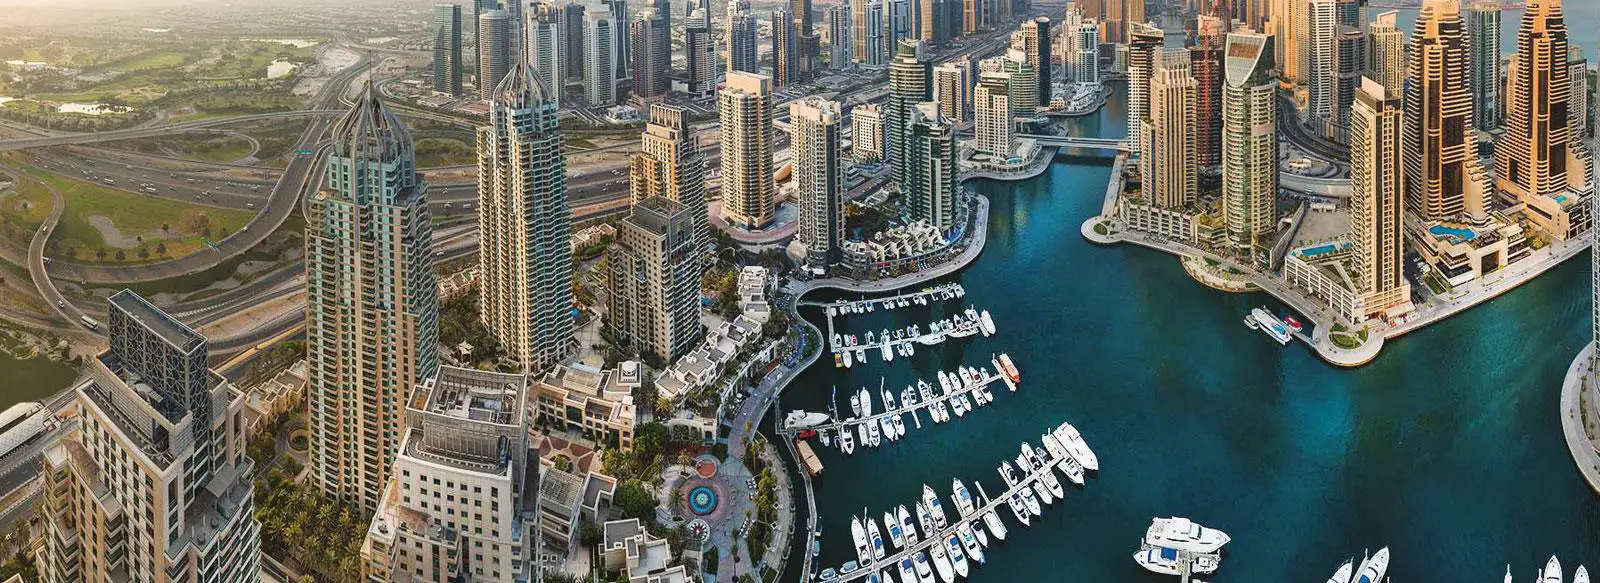 Les Résidences, Marina de Dubaï, Dubaï.